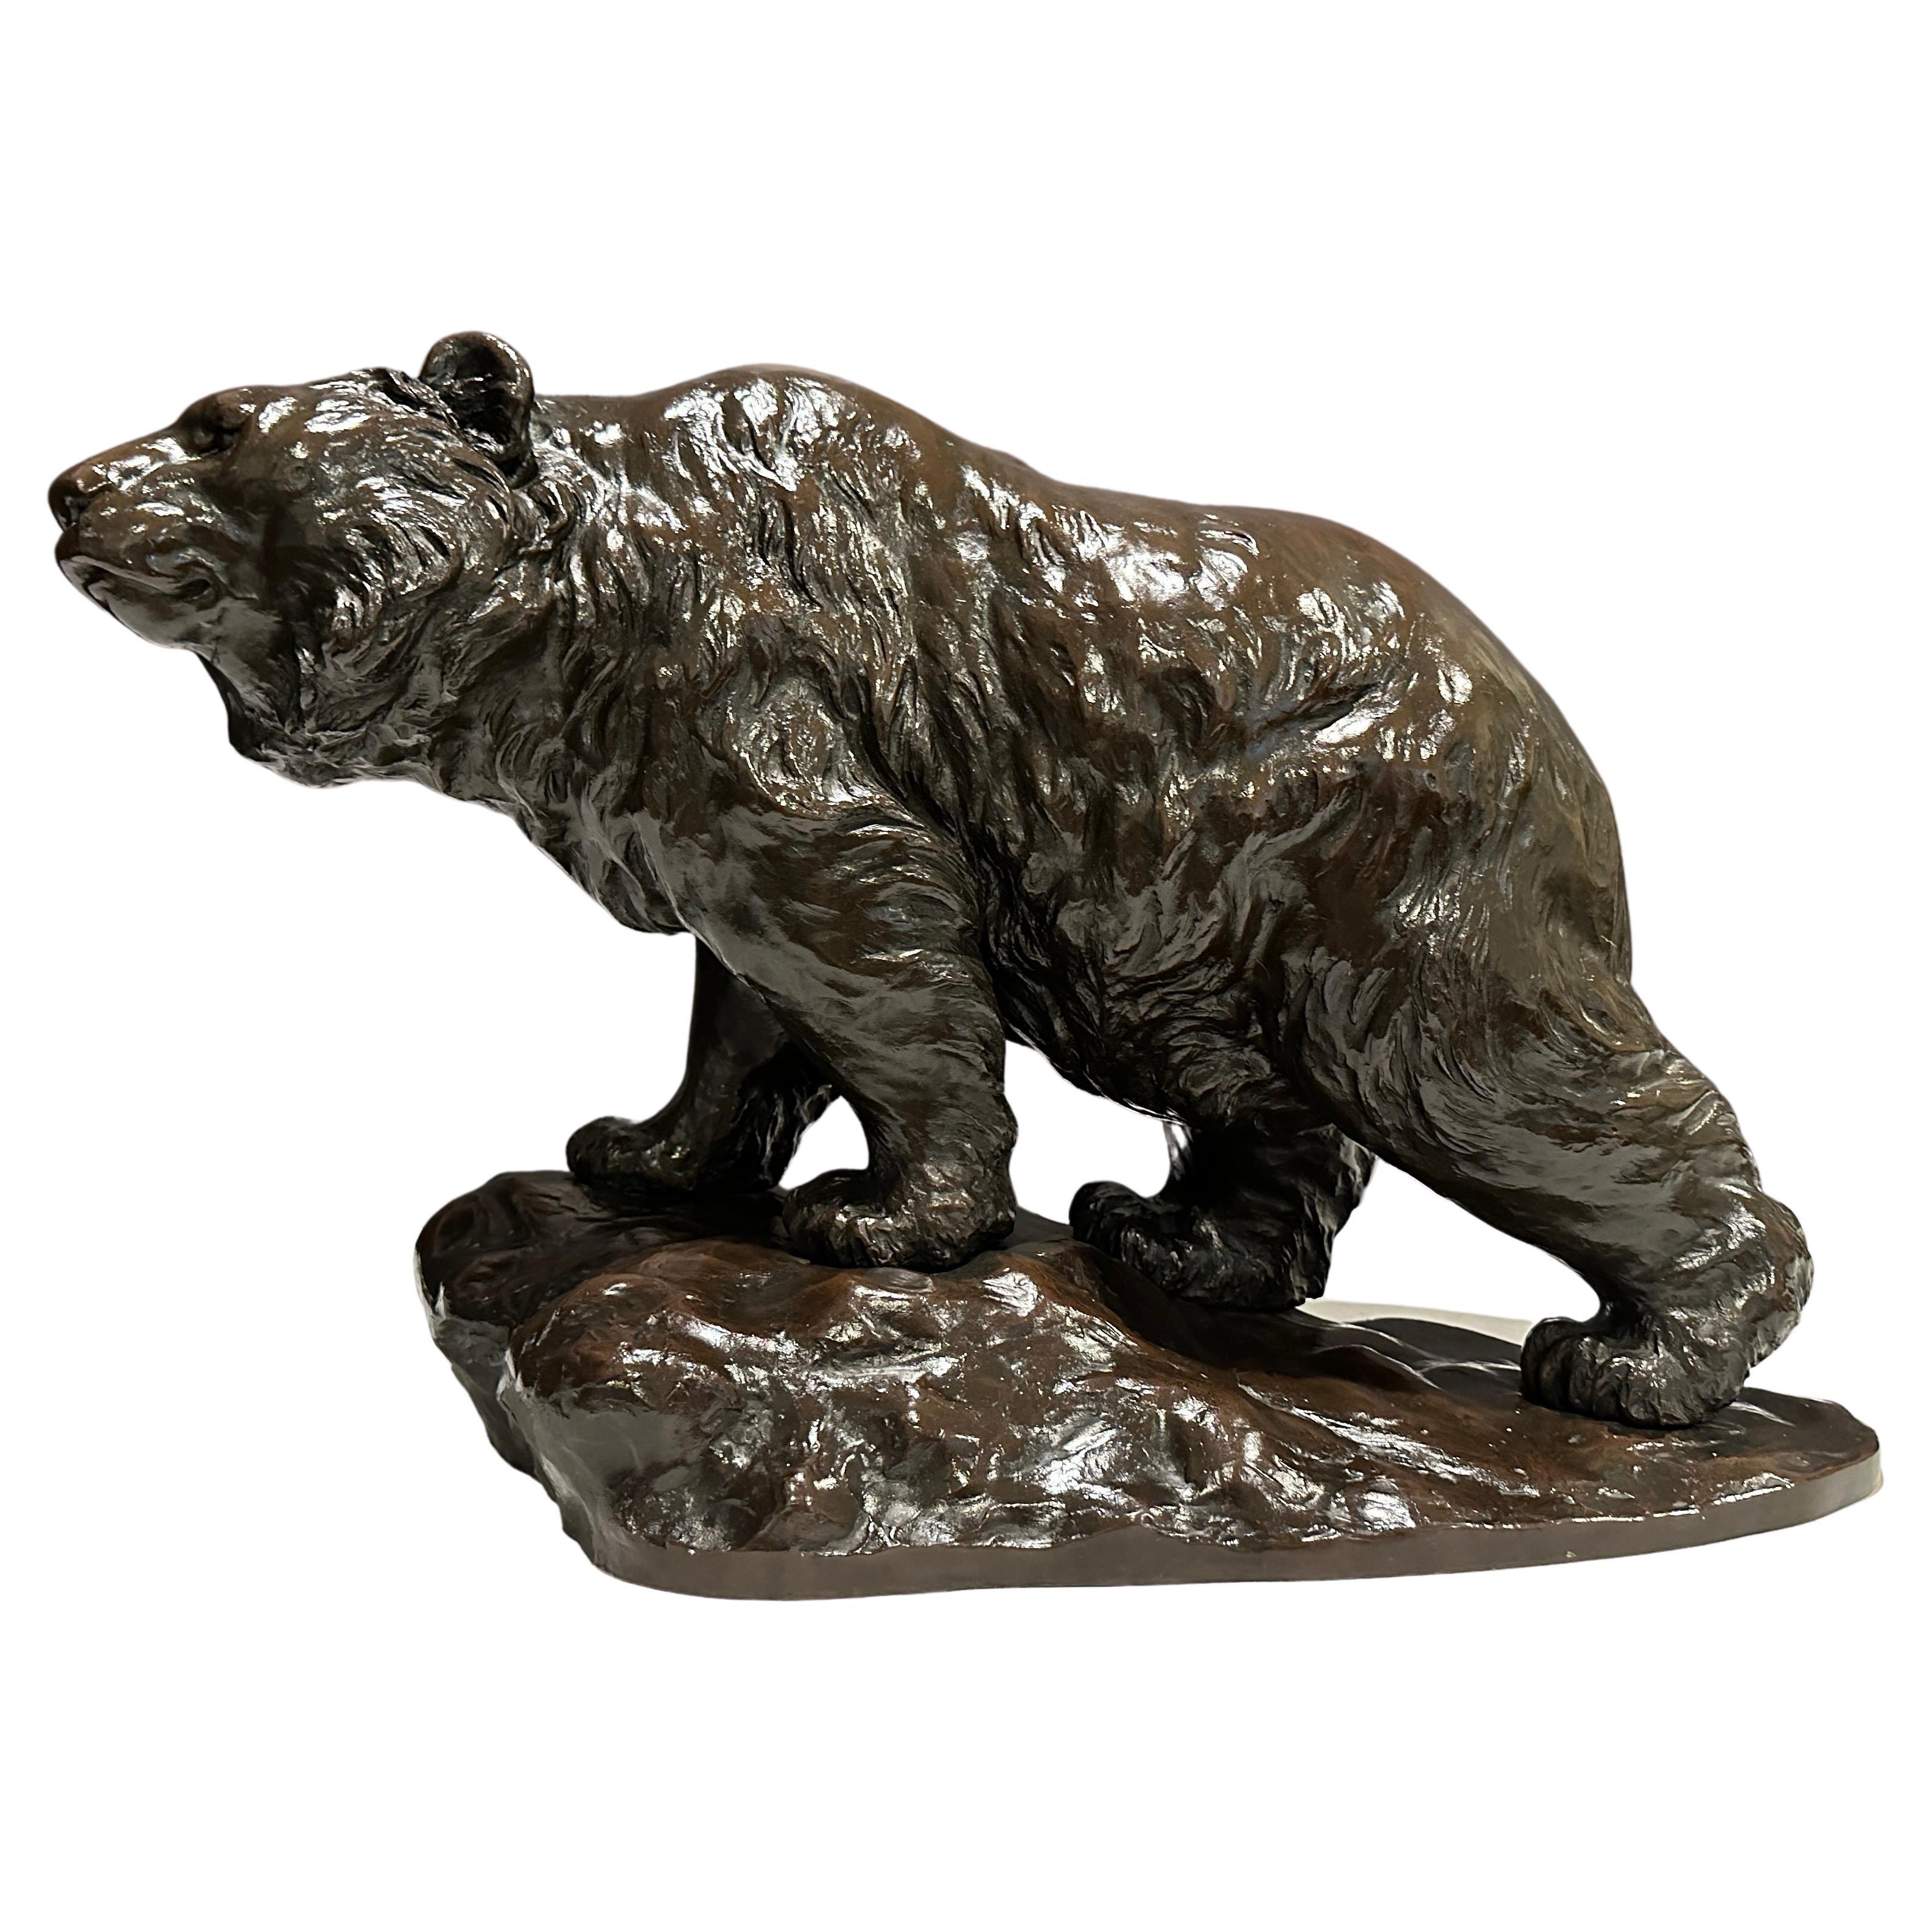 Grand et impressionnant ours en bronze de la période Meiji, signé